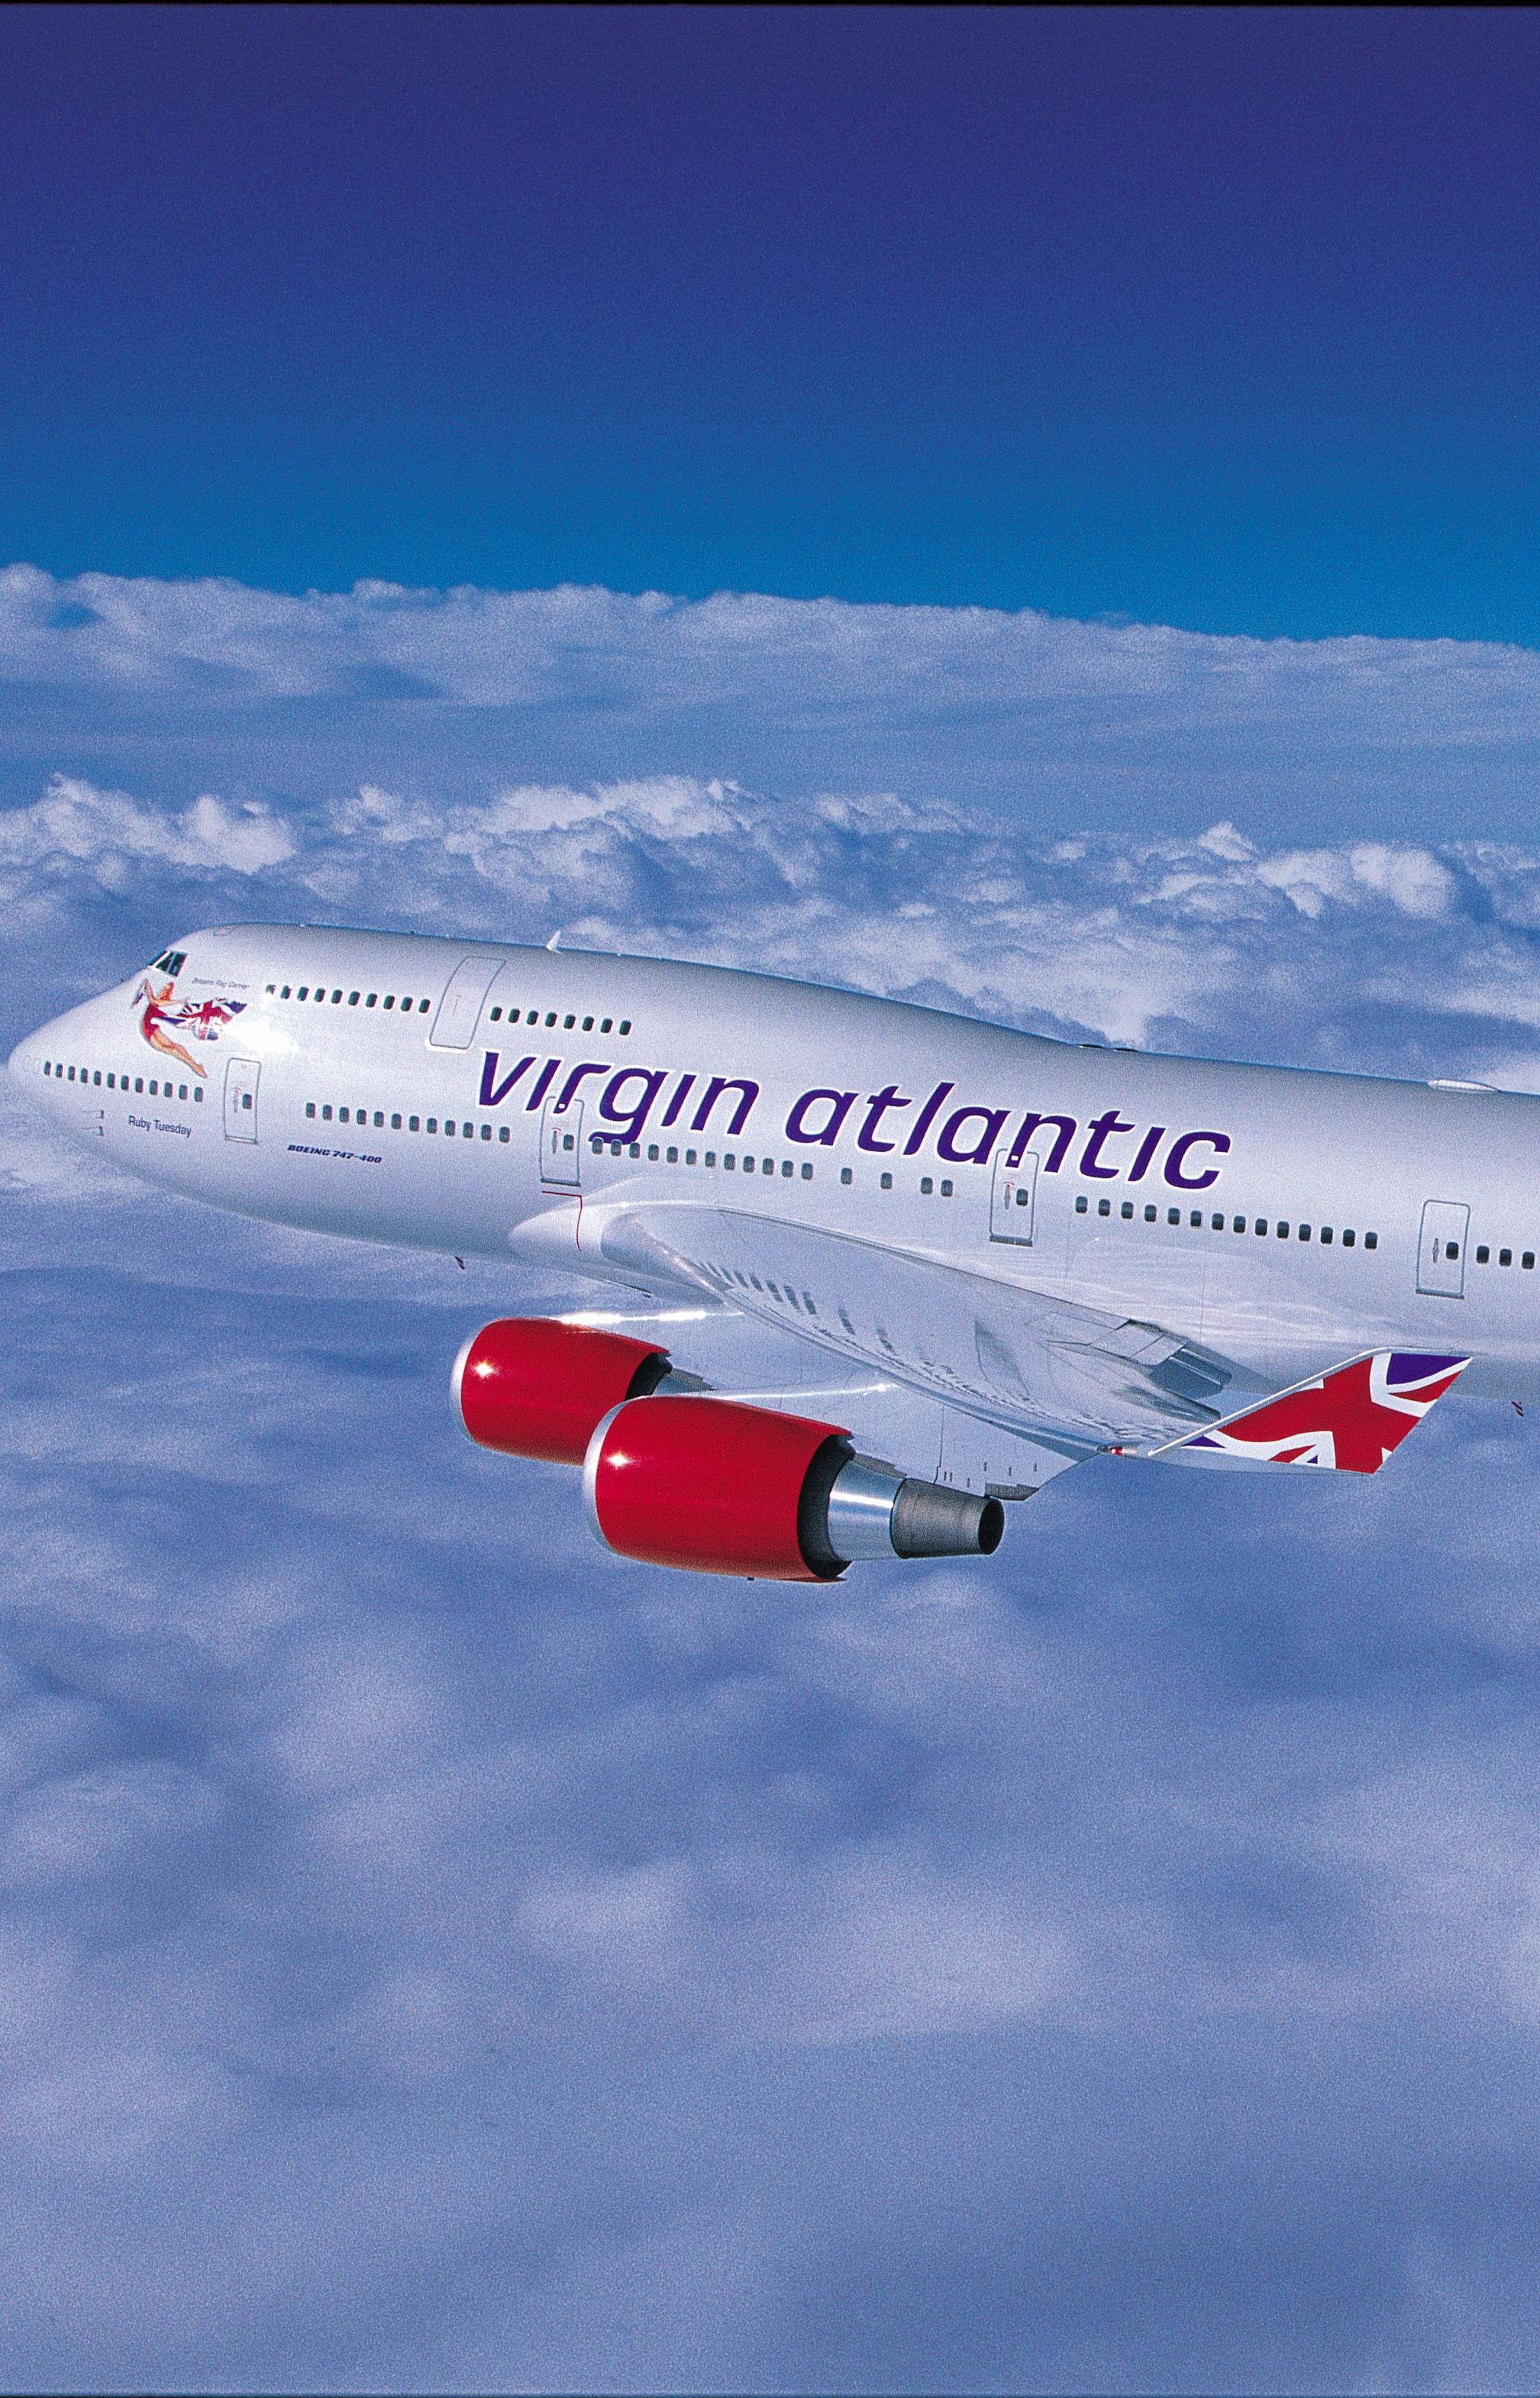 Пассажирский самолет Virgin Atlantic впервые в истории полетит на биотопливе